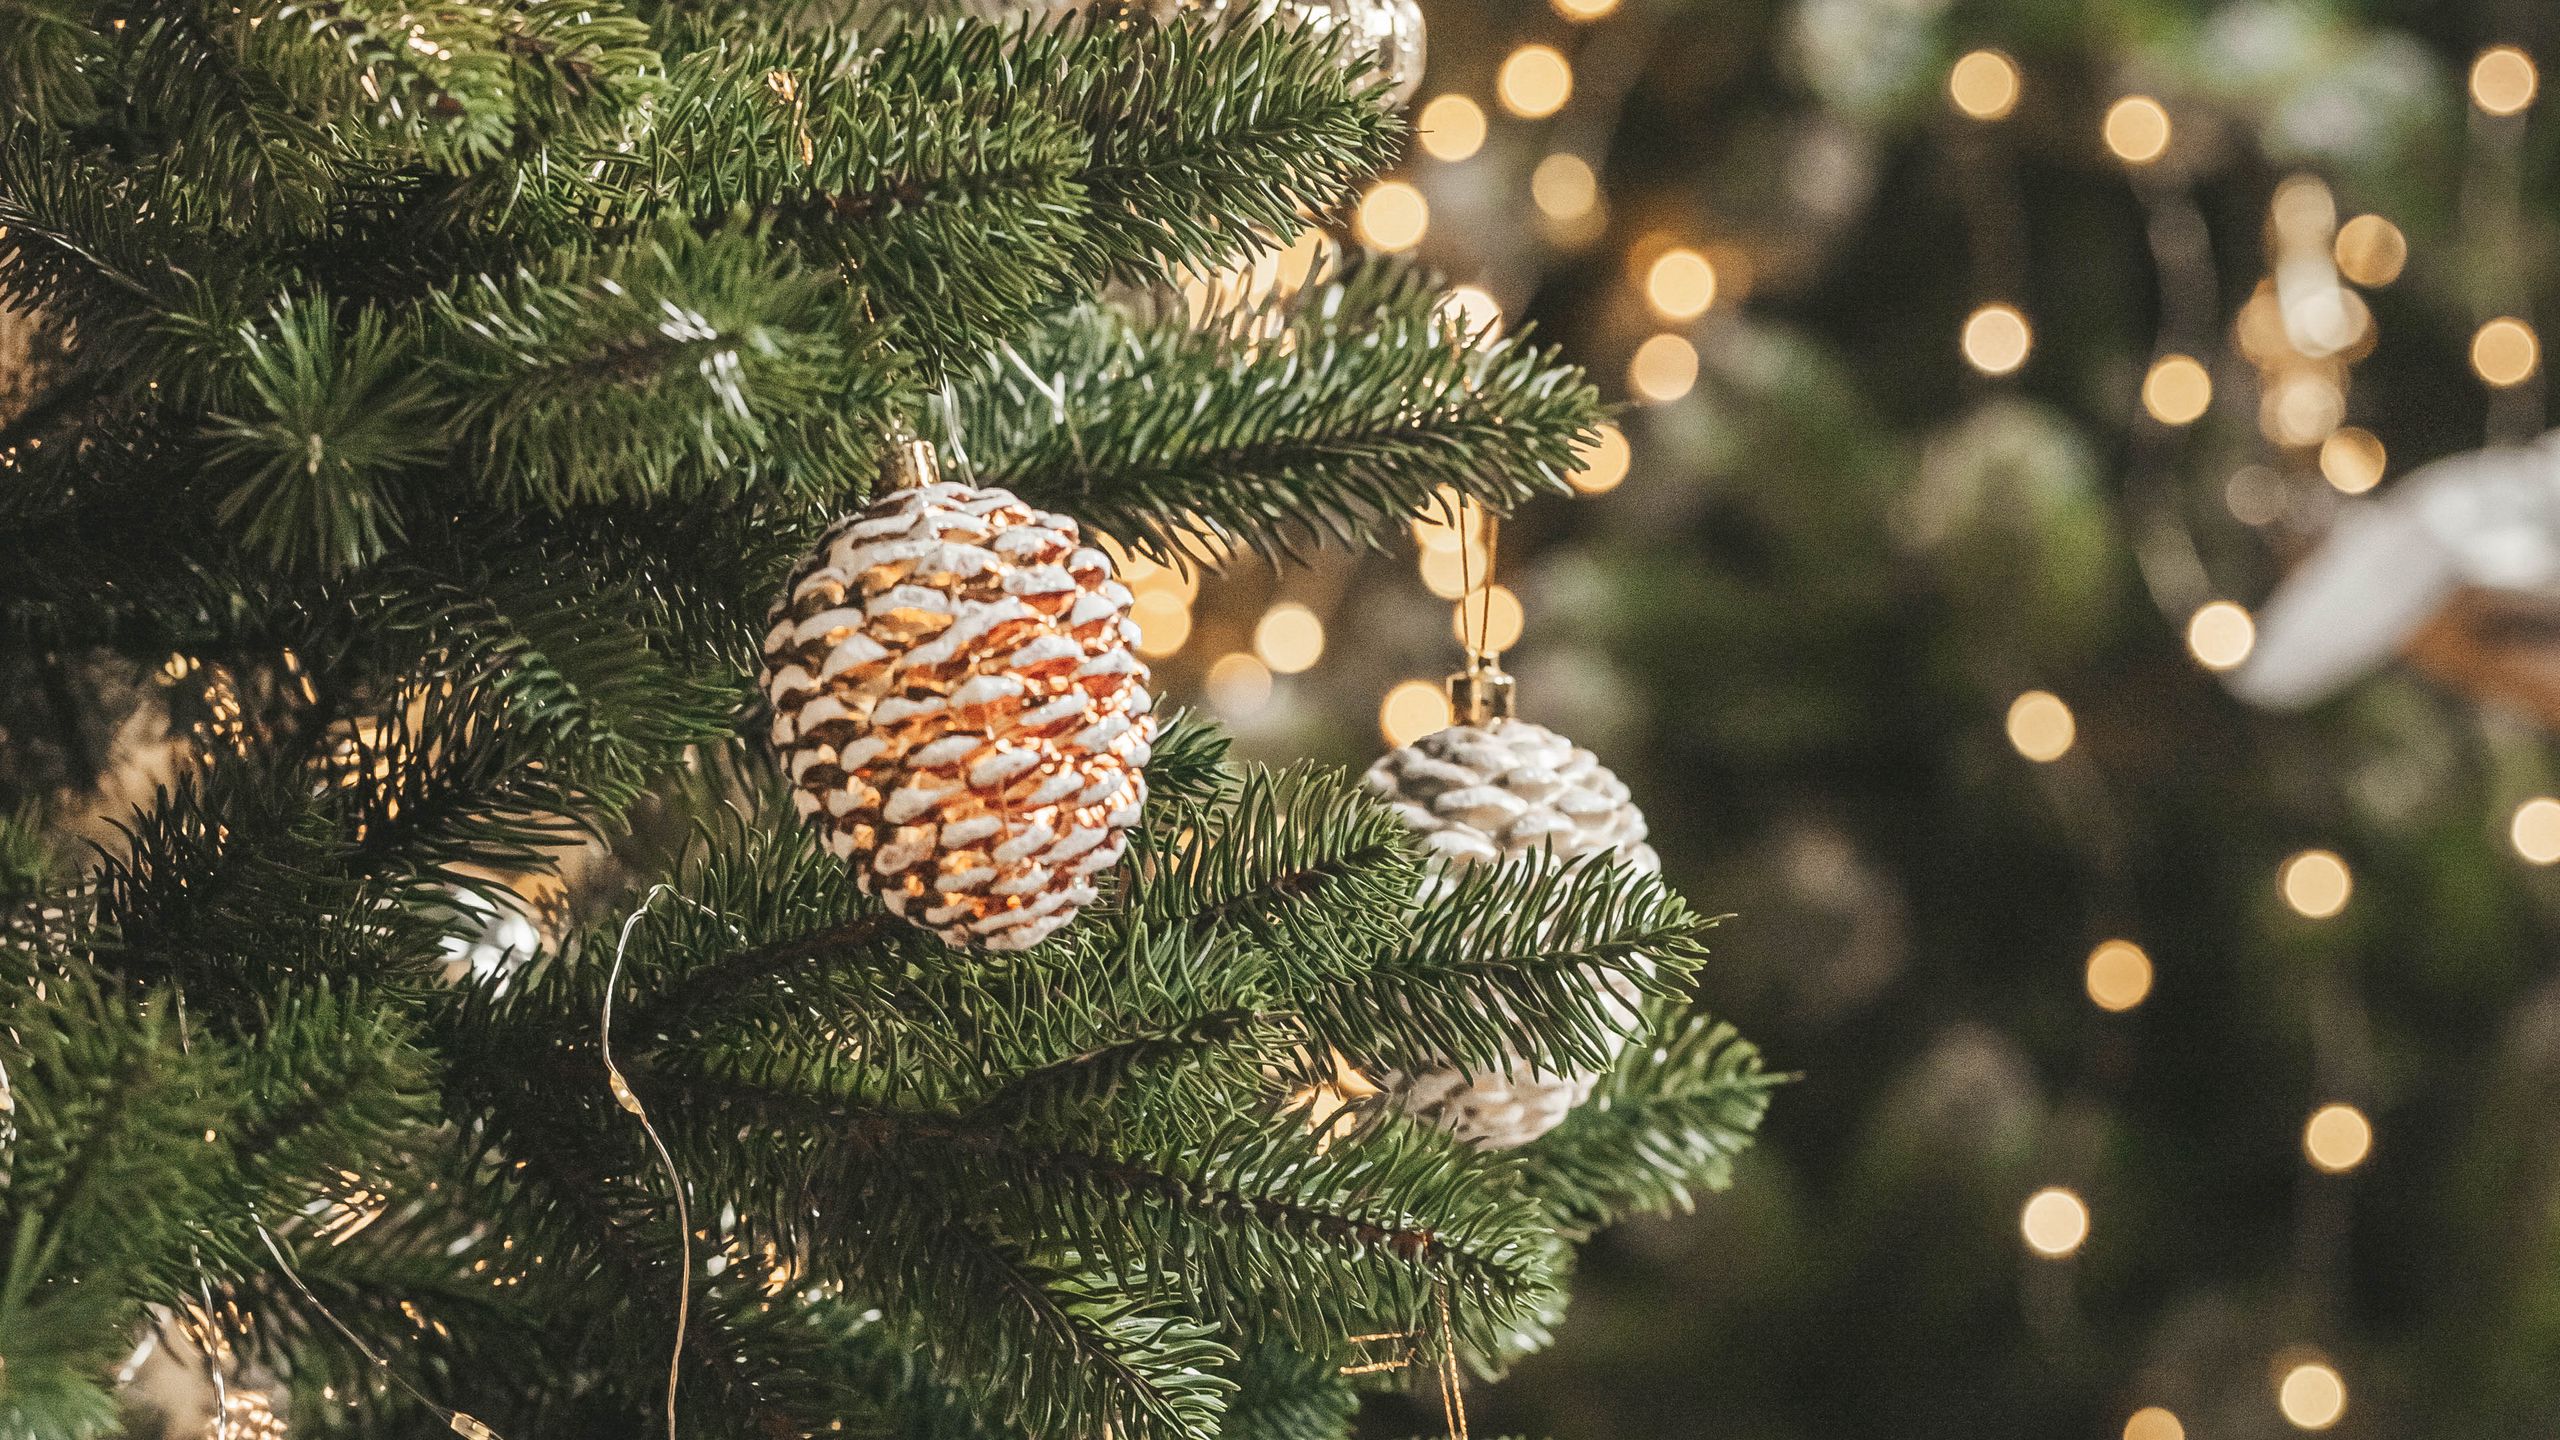 Mùa Giáng Sinh đã đến, và cây thông là biểu tượng truyền thống của mùa lễ hội. Hãy xem những hình ảnh đẹp của cây thông ấy để nâng cao tinh thần Giáng Sinh cho bạn và gia đình.